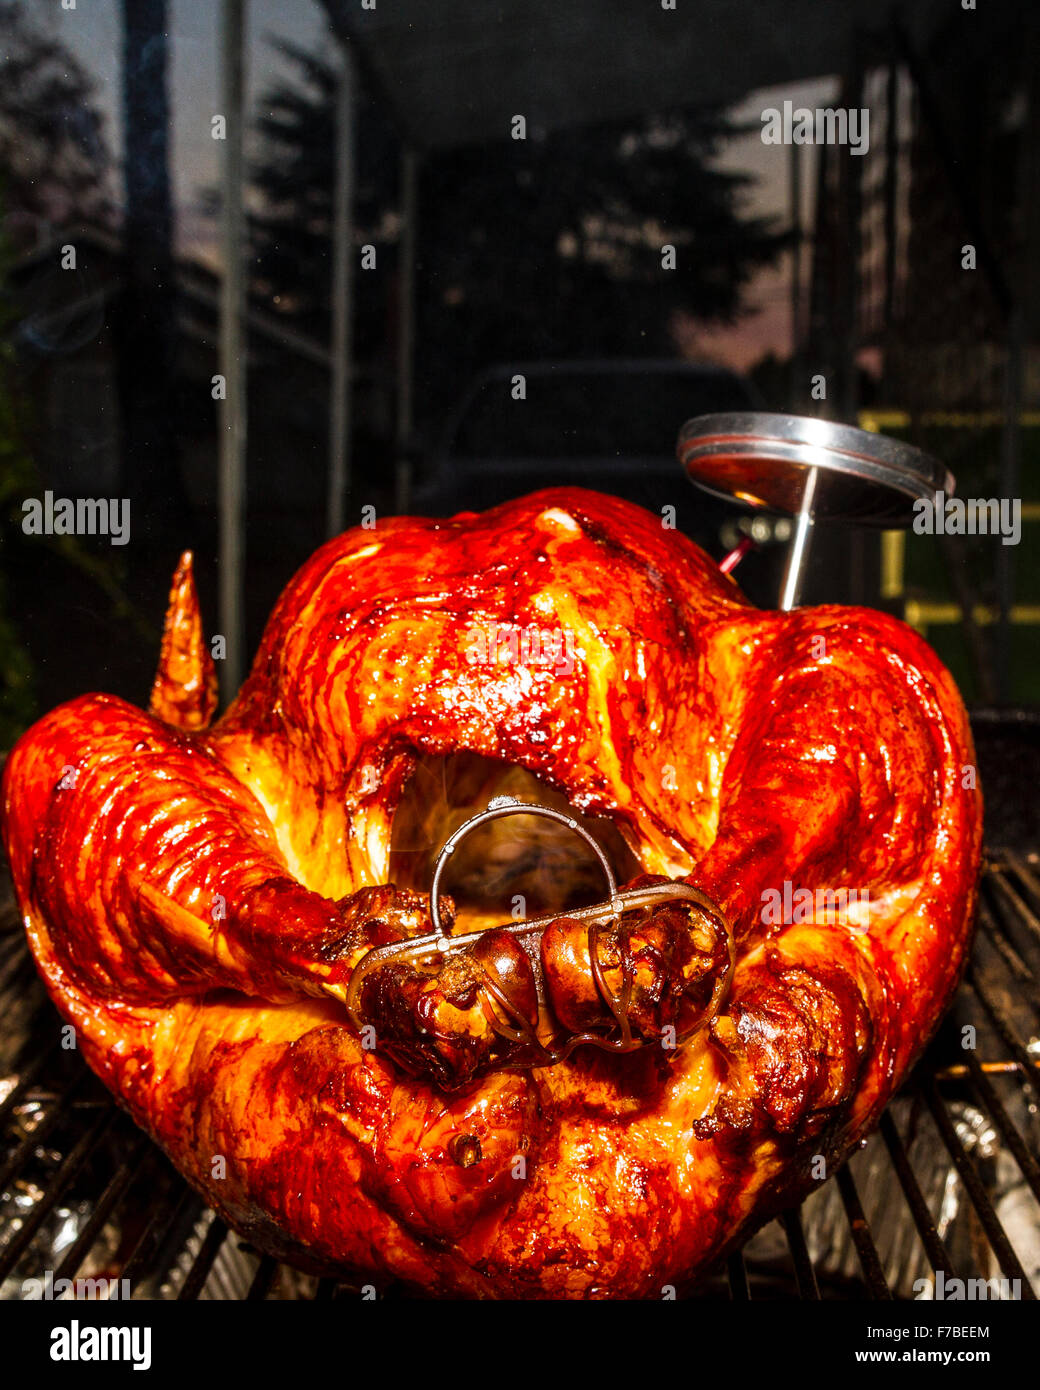 Un sale rub messi in salamoia ringraziamento Turchia cotti su una Weber Kettle barbecue con il termometro della carne che indica se sono cotti Foto Stock